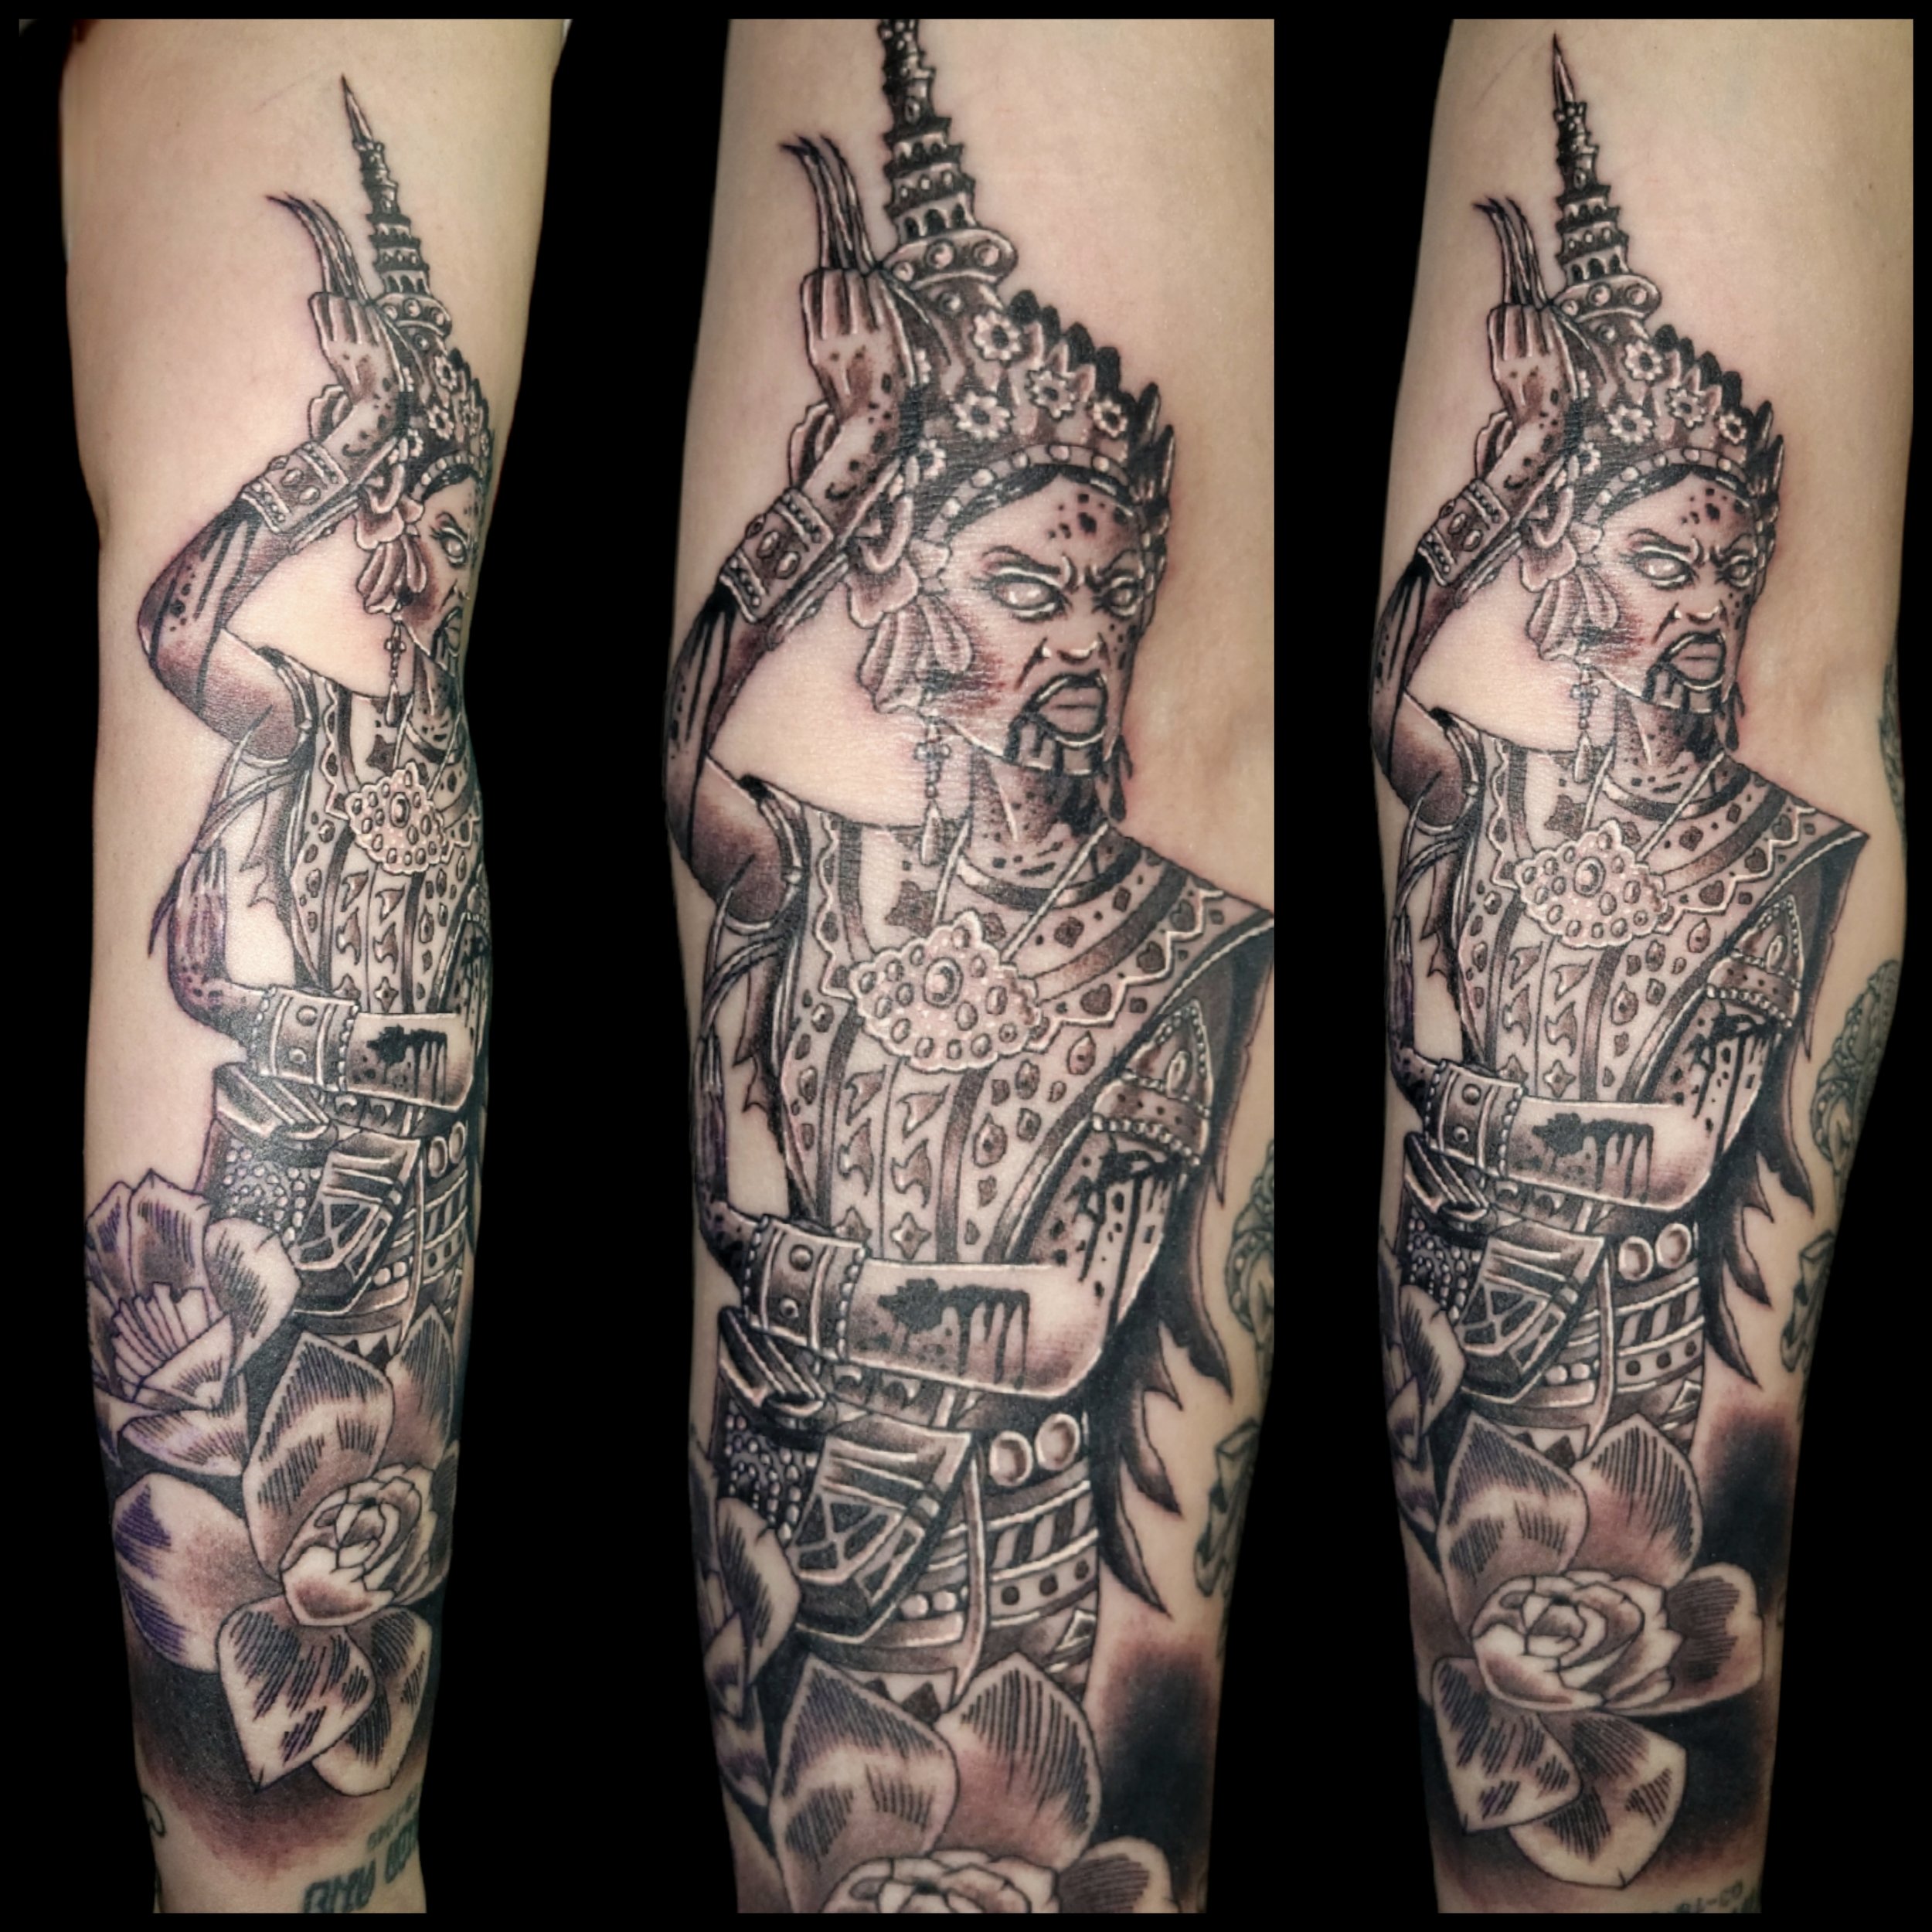 Tattooist Gus — The Tattoo Guild